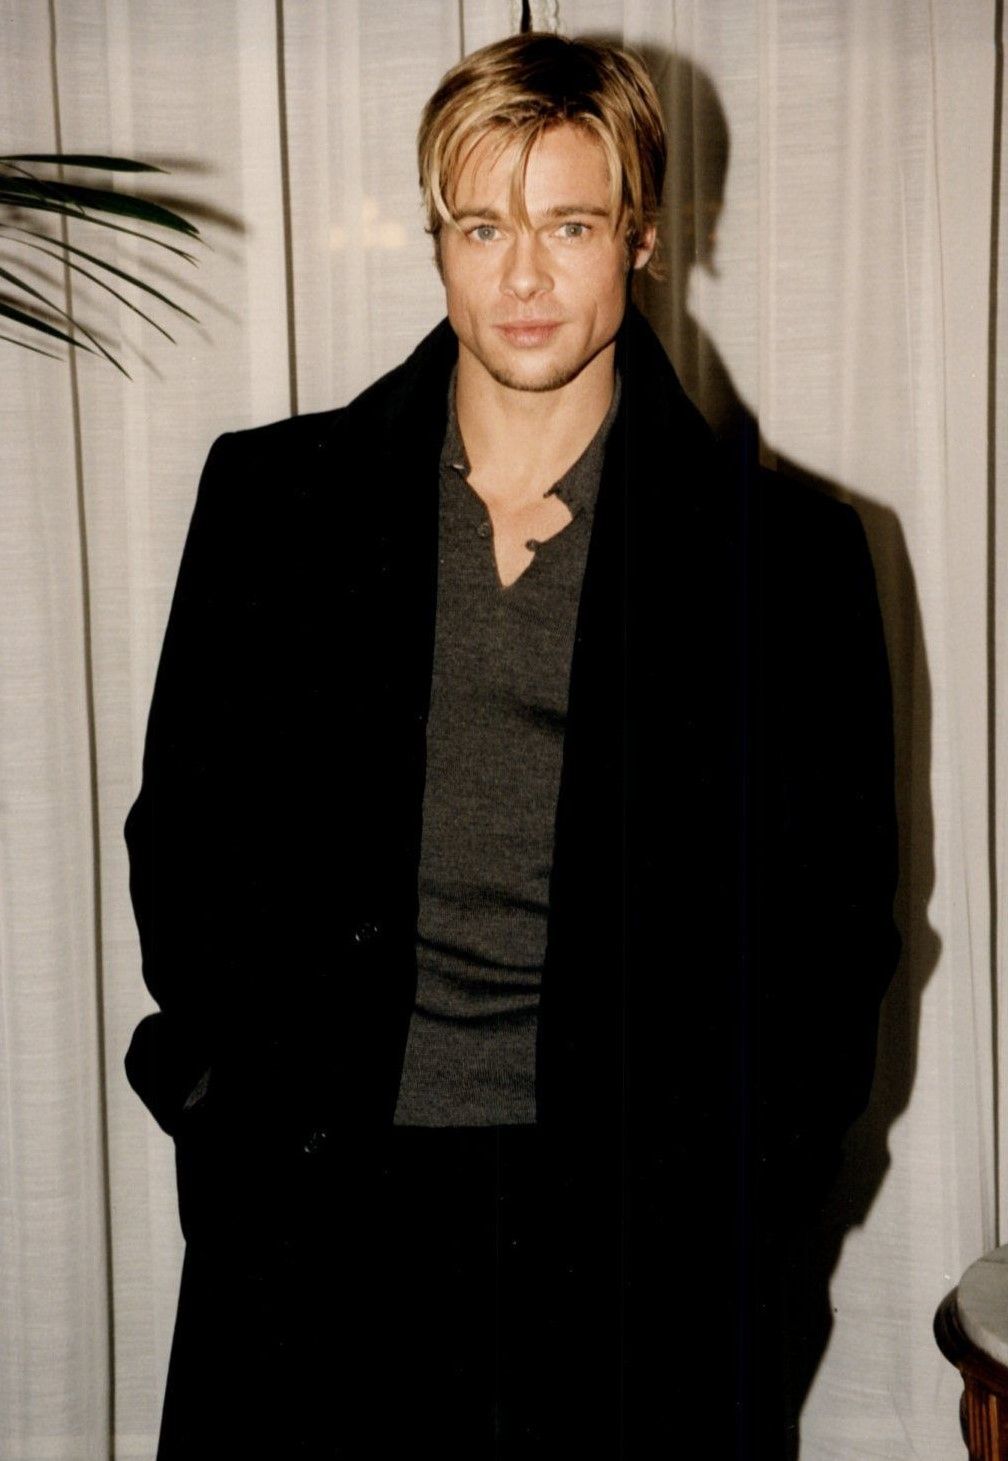 Dàn mỹ nam huyền thoại giờ ra sao: Tom Cruise, Brad Pitt U60 vẫn phong độ, Leonardo bị ngải heo nhập chưa bằng loạt nam thần hói dần đều - Ảnh 13.